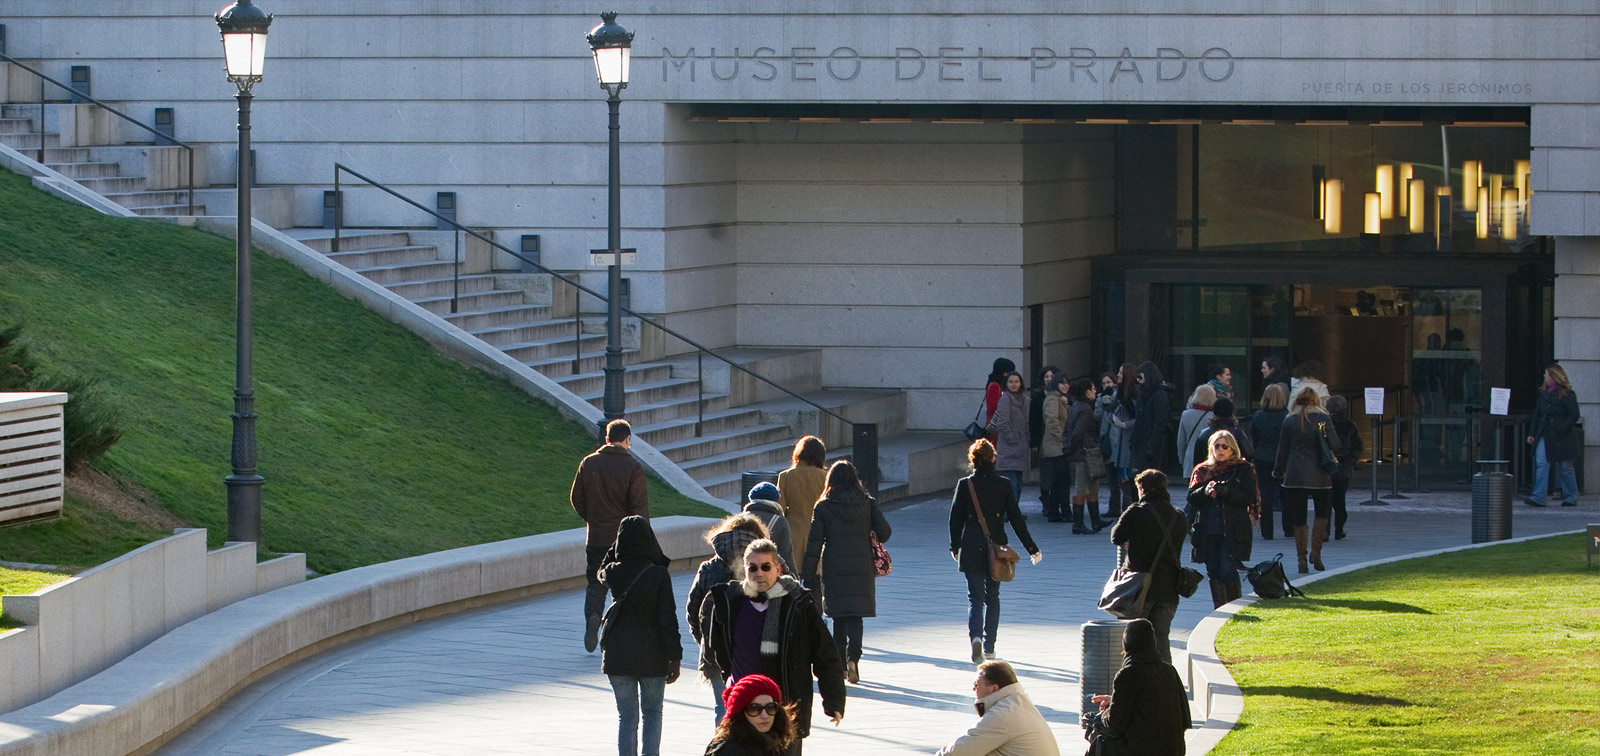 <em>Retiro, Prado y Museo: múltiples realidades, un solo patrimonio</em>